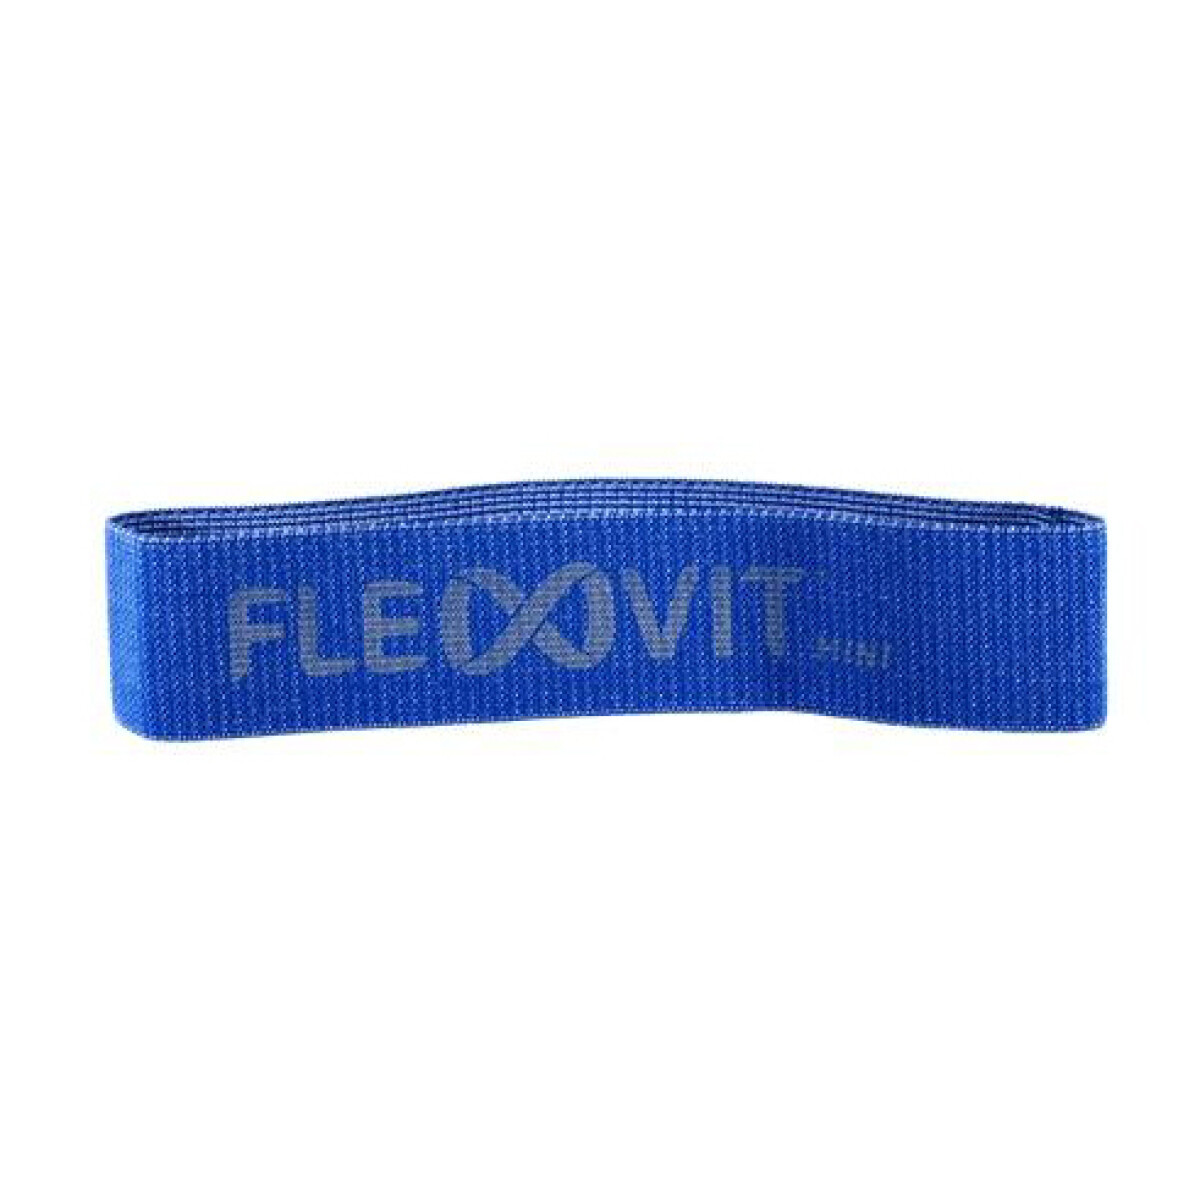 Banda Elástica Flexvit Mini Band - N°5 Azul 